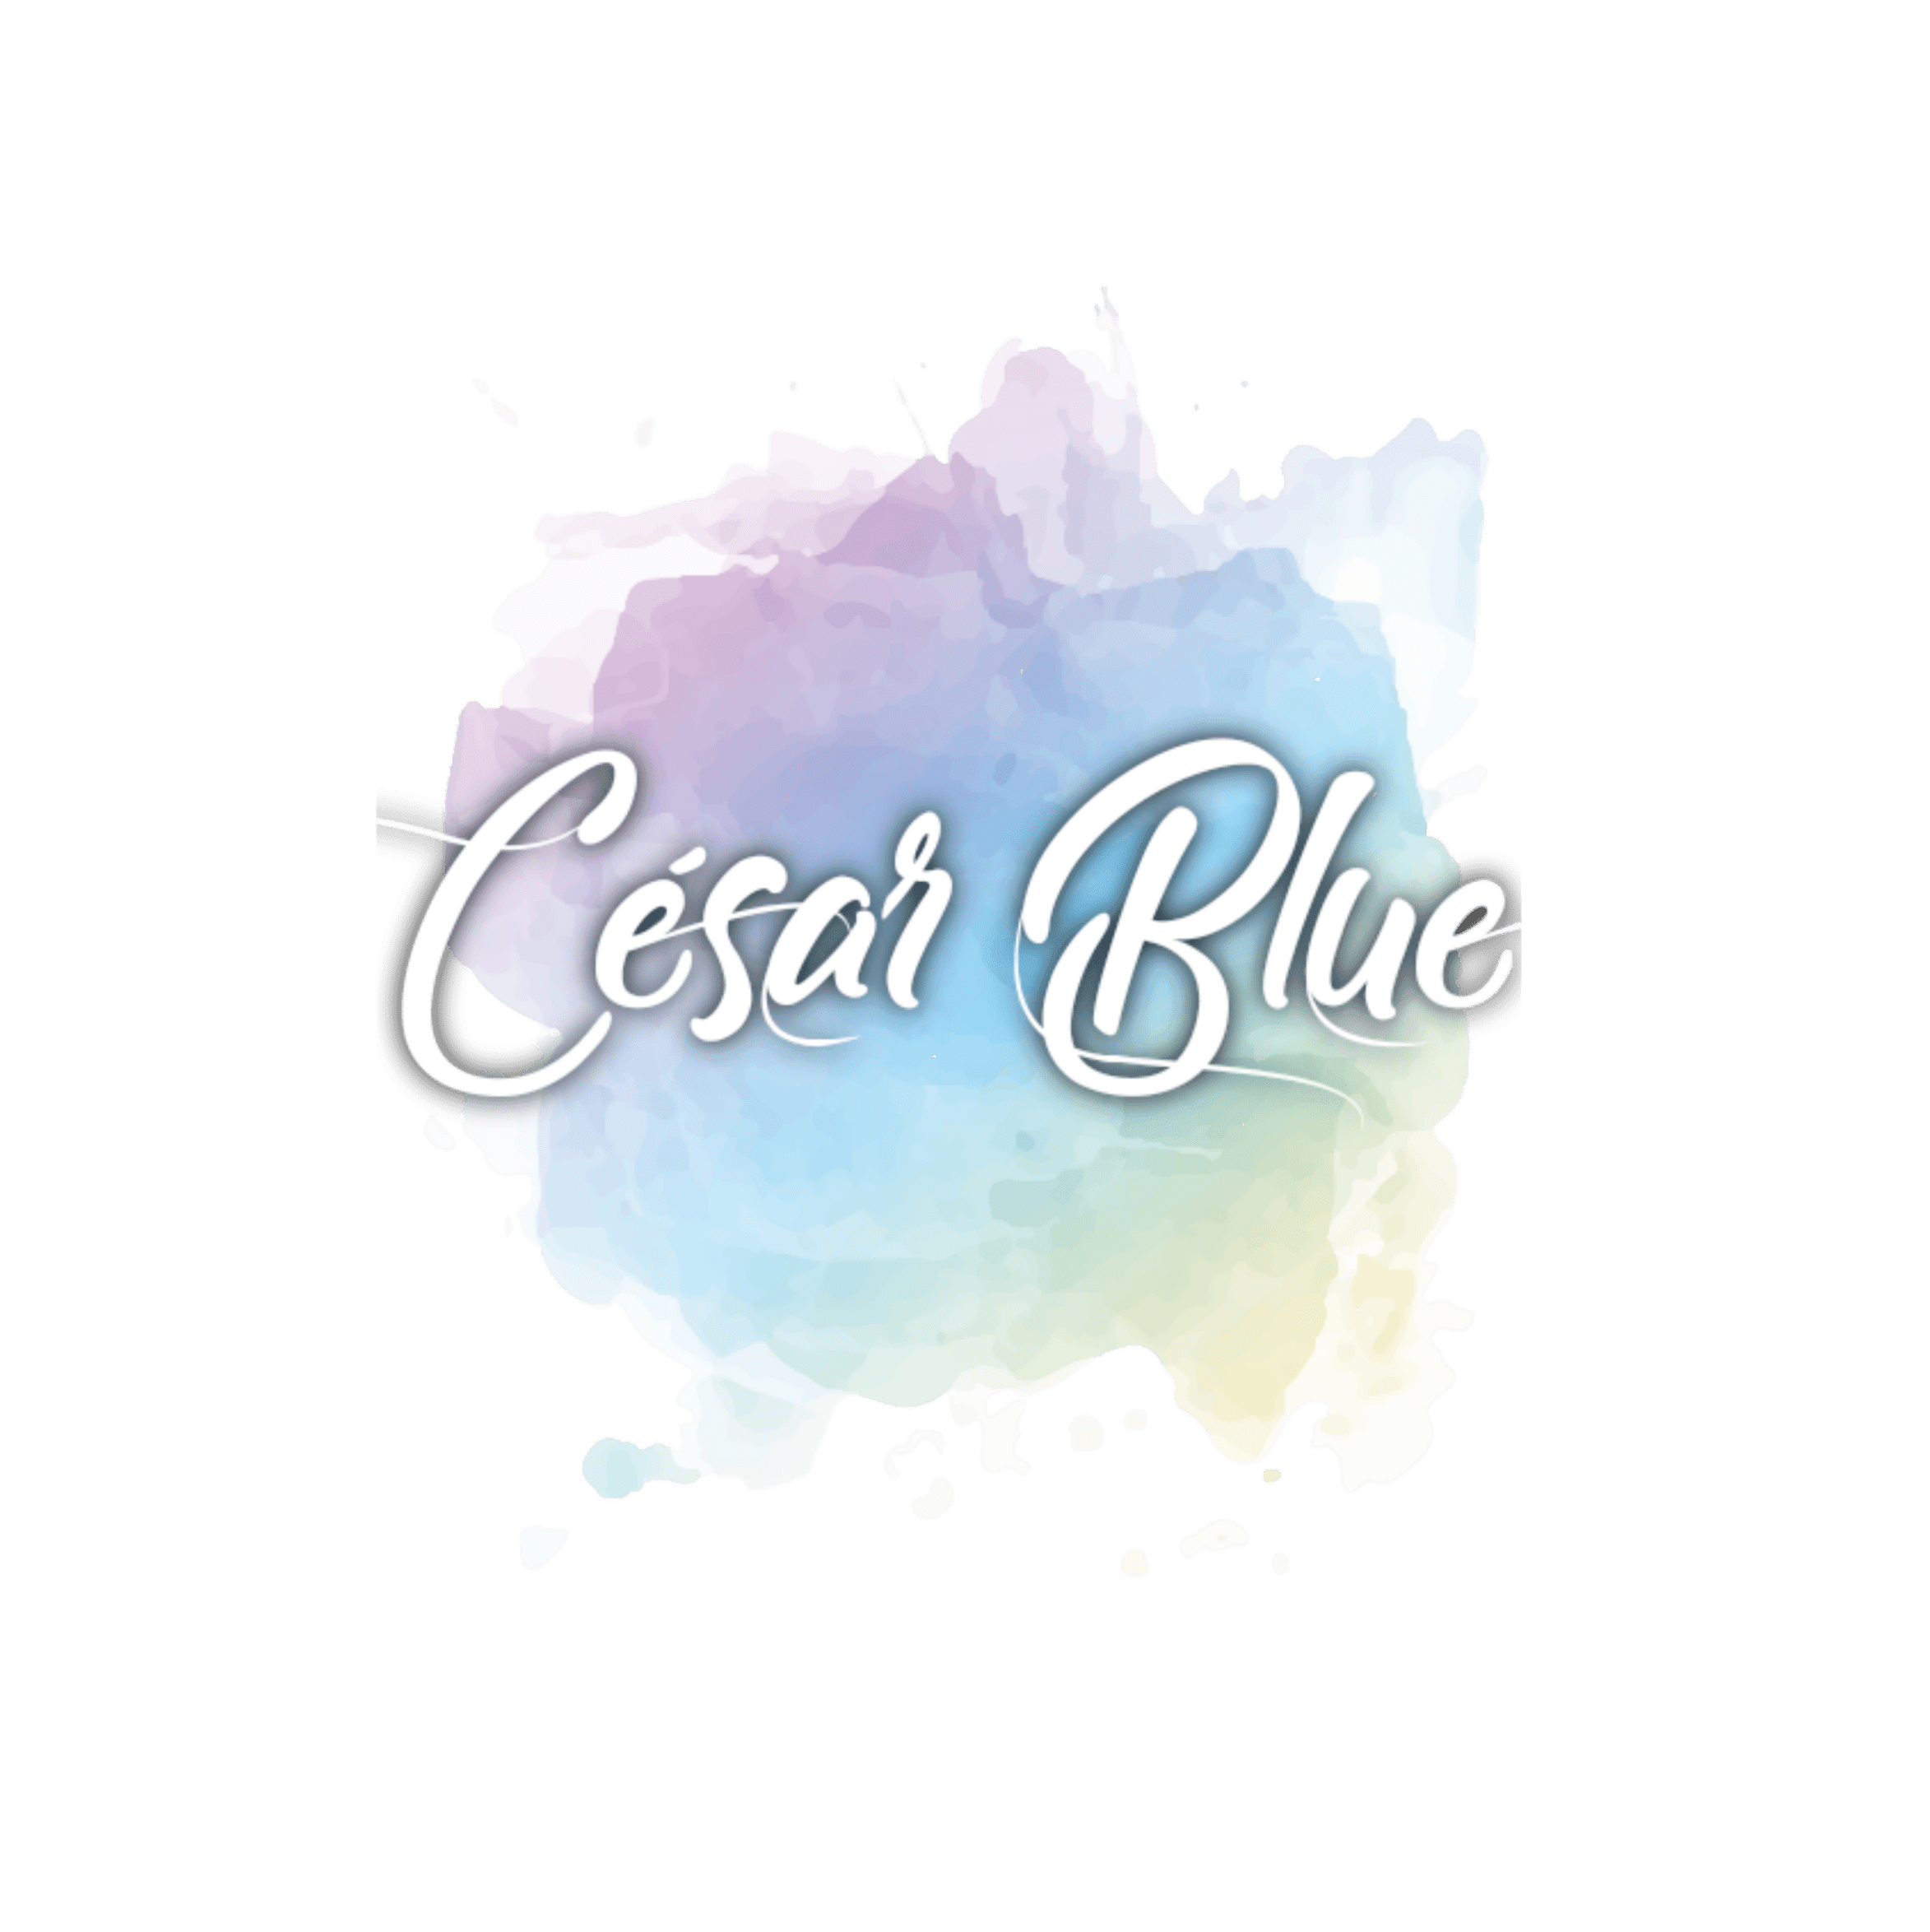 César Blue